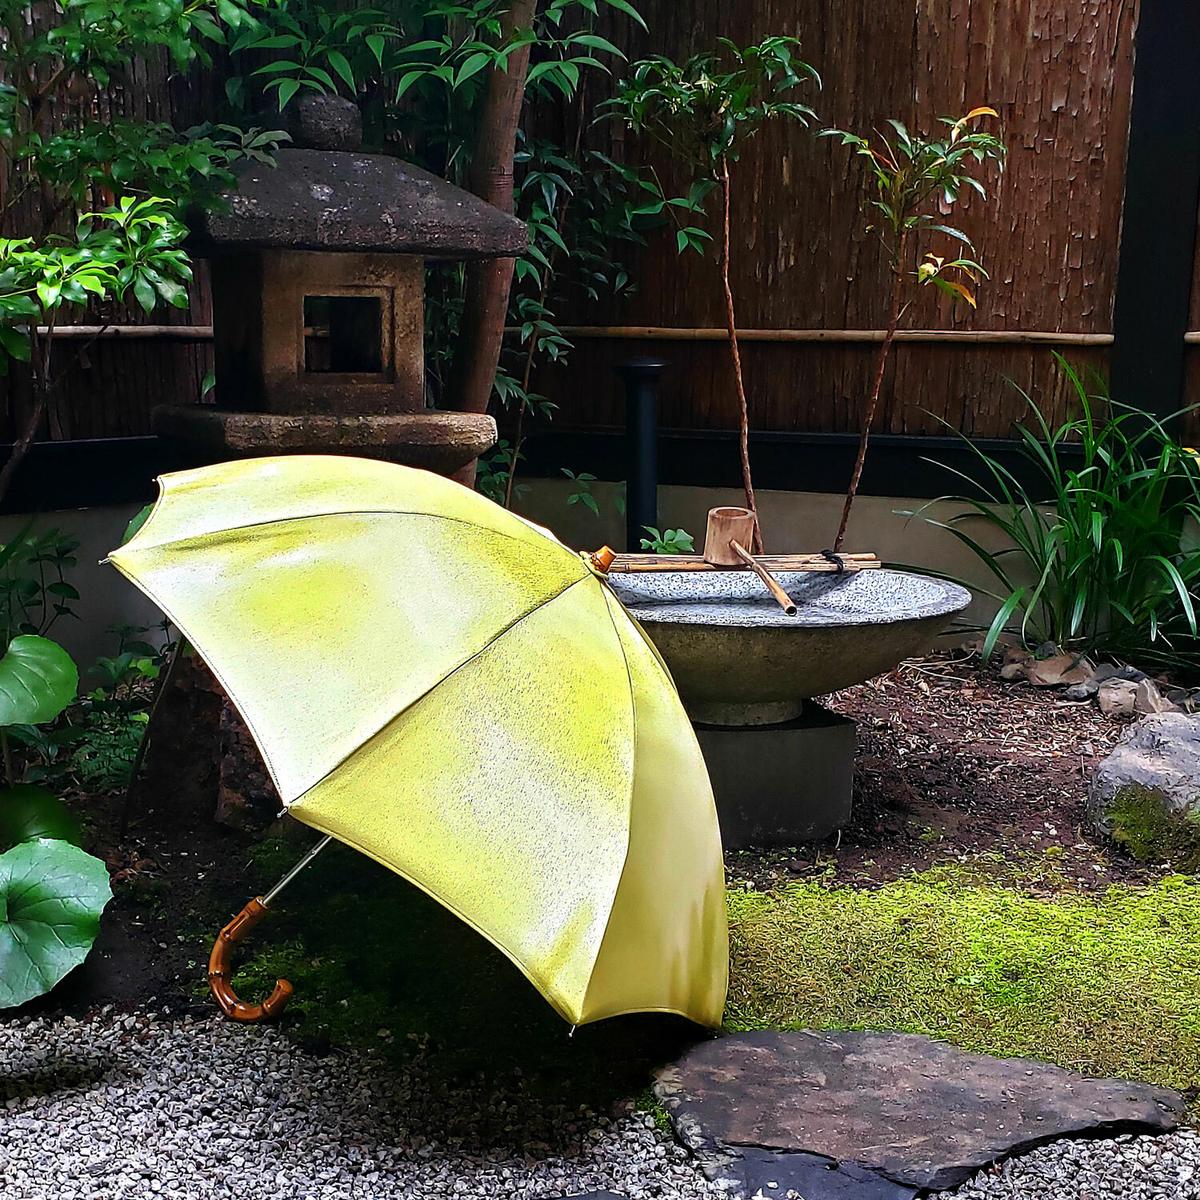 ソーシャルディスタンス日傘 世界にひとつご自宅で作る手作り日傘キット